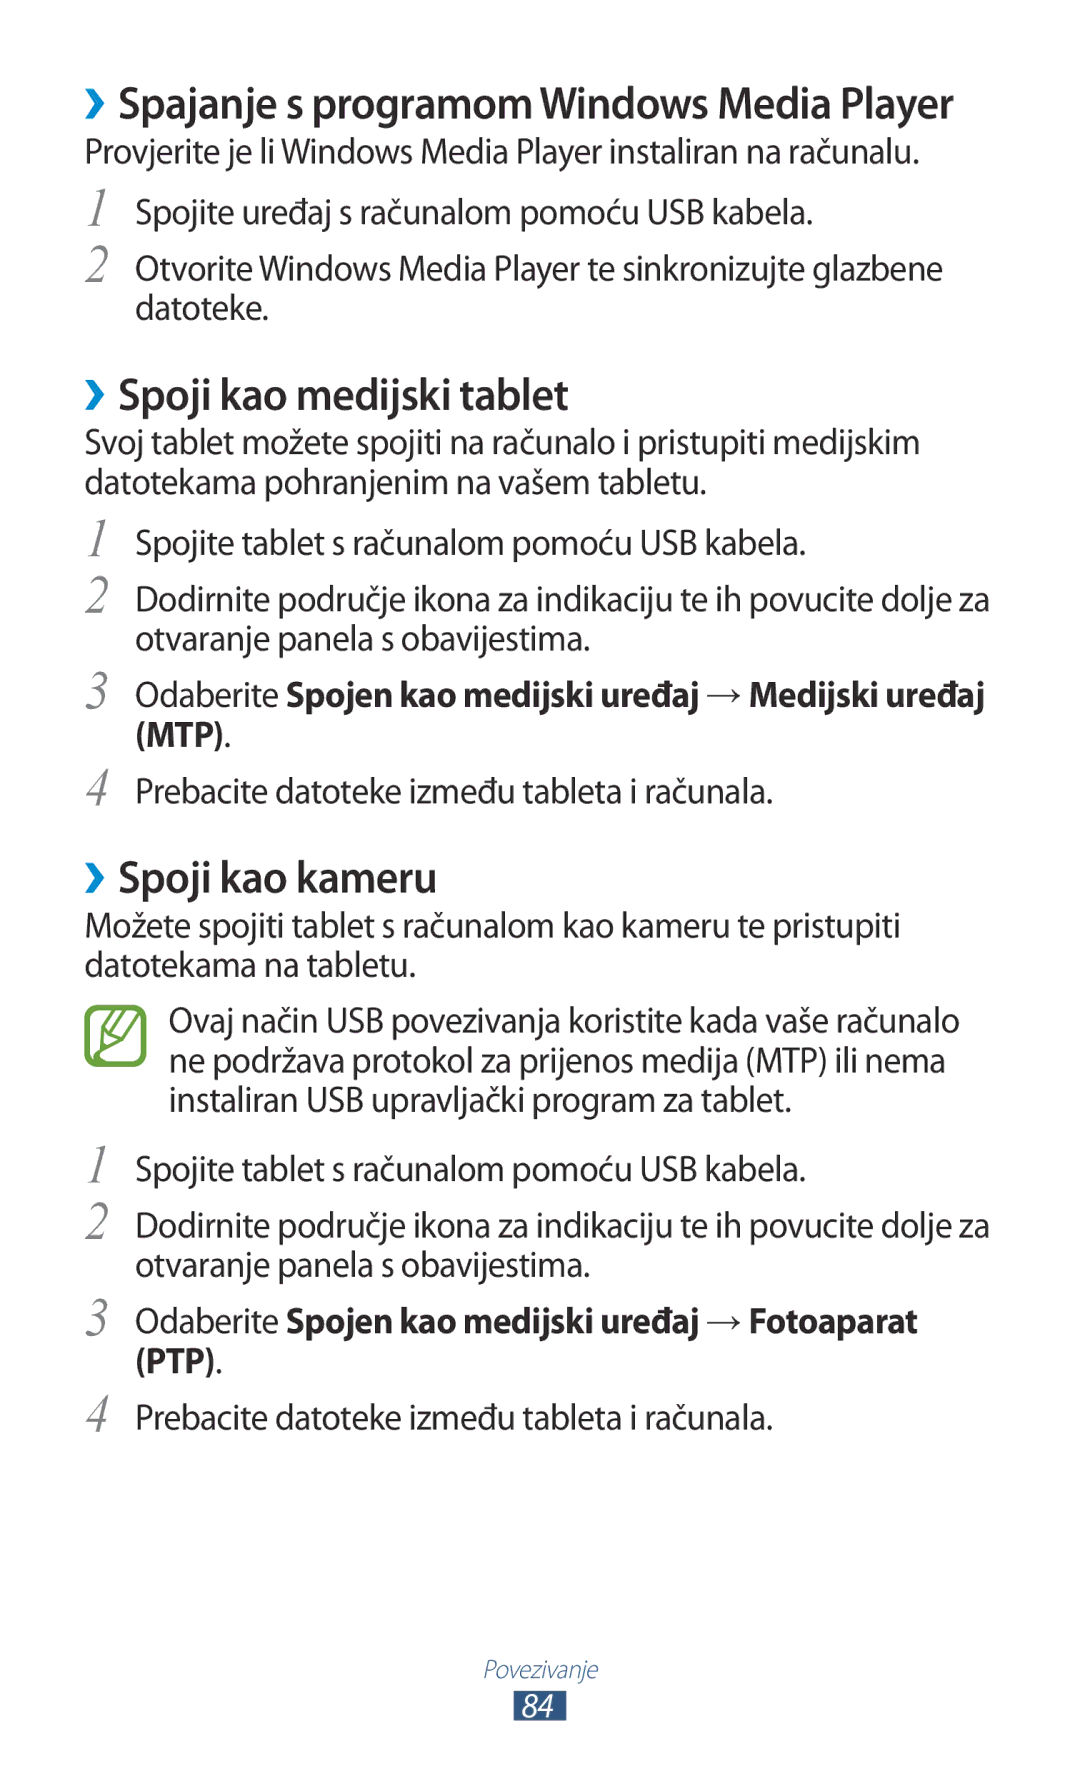 Samsung GT-P3110GRATRA manual ››Spoji kao medijski tablet, ››Spoji kao kameru, Prebacite datoteke između tableta i računala 